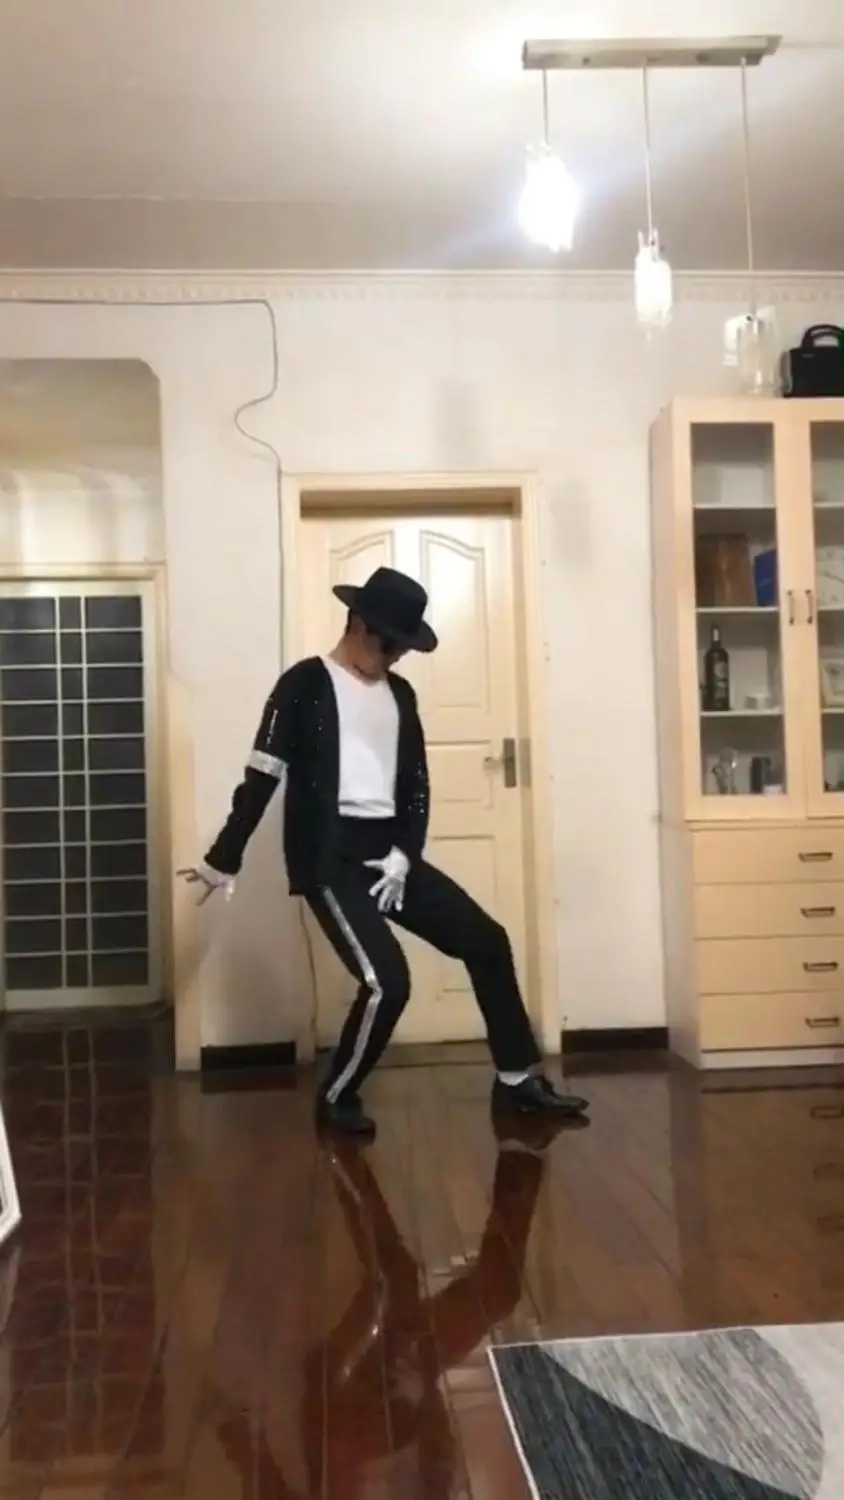 Adult Child Michael Jackson Shoes Billie Jean